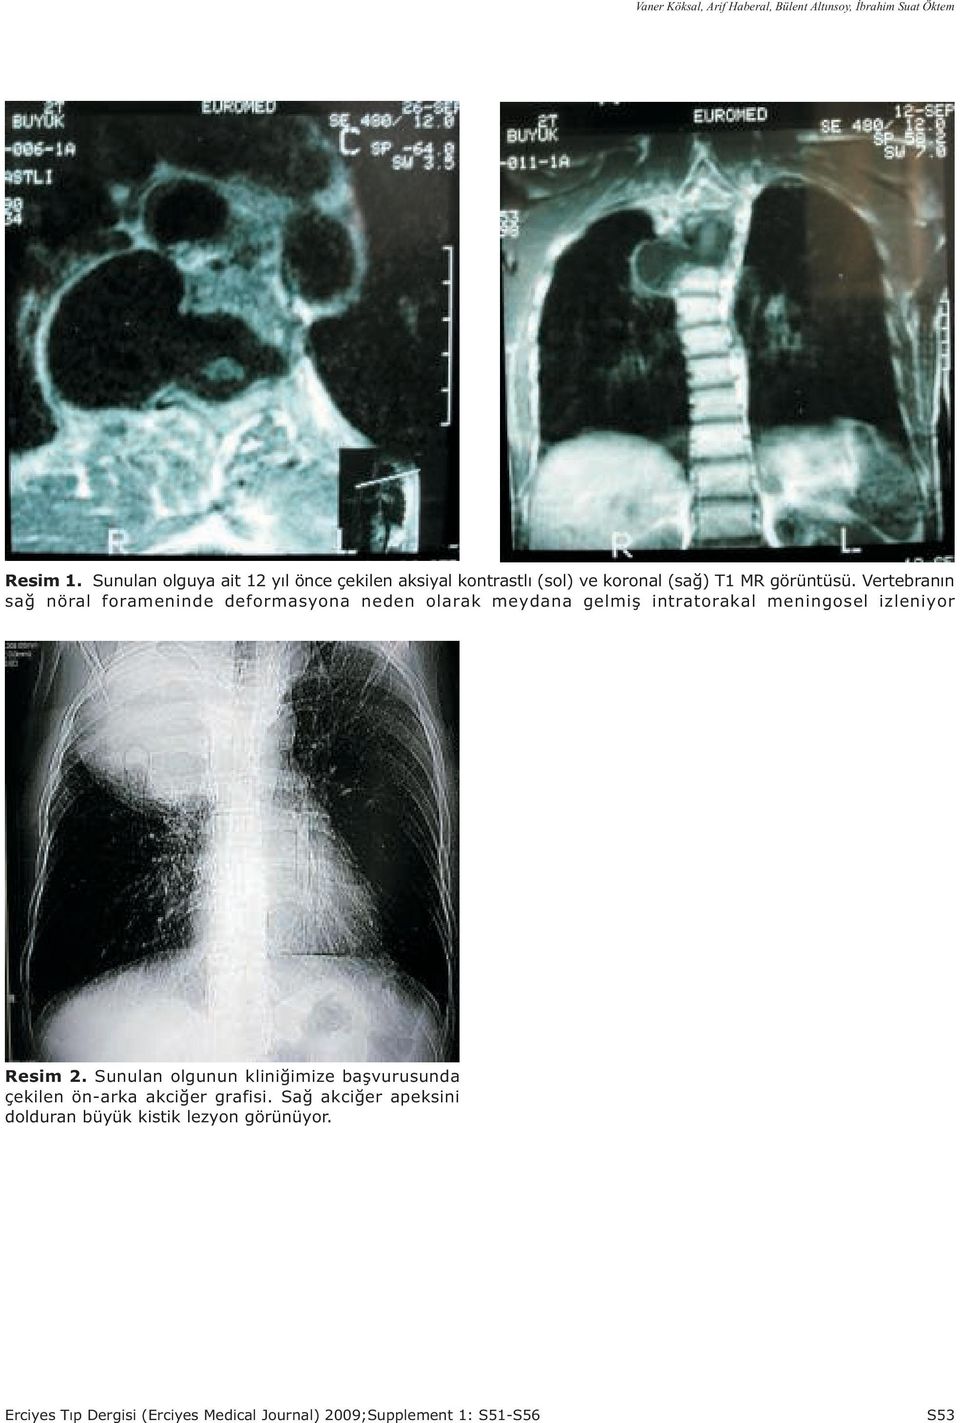 Vertebranýn sað nöral forameninde deformasyona neden olarak meydana gelmiþ intratorakal meningosel